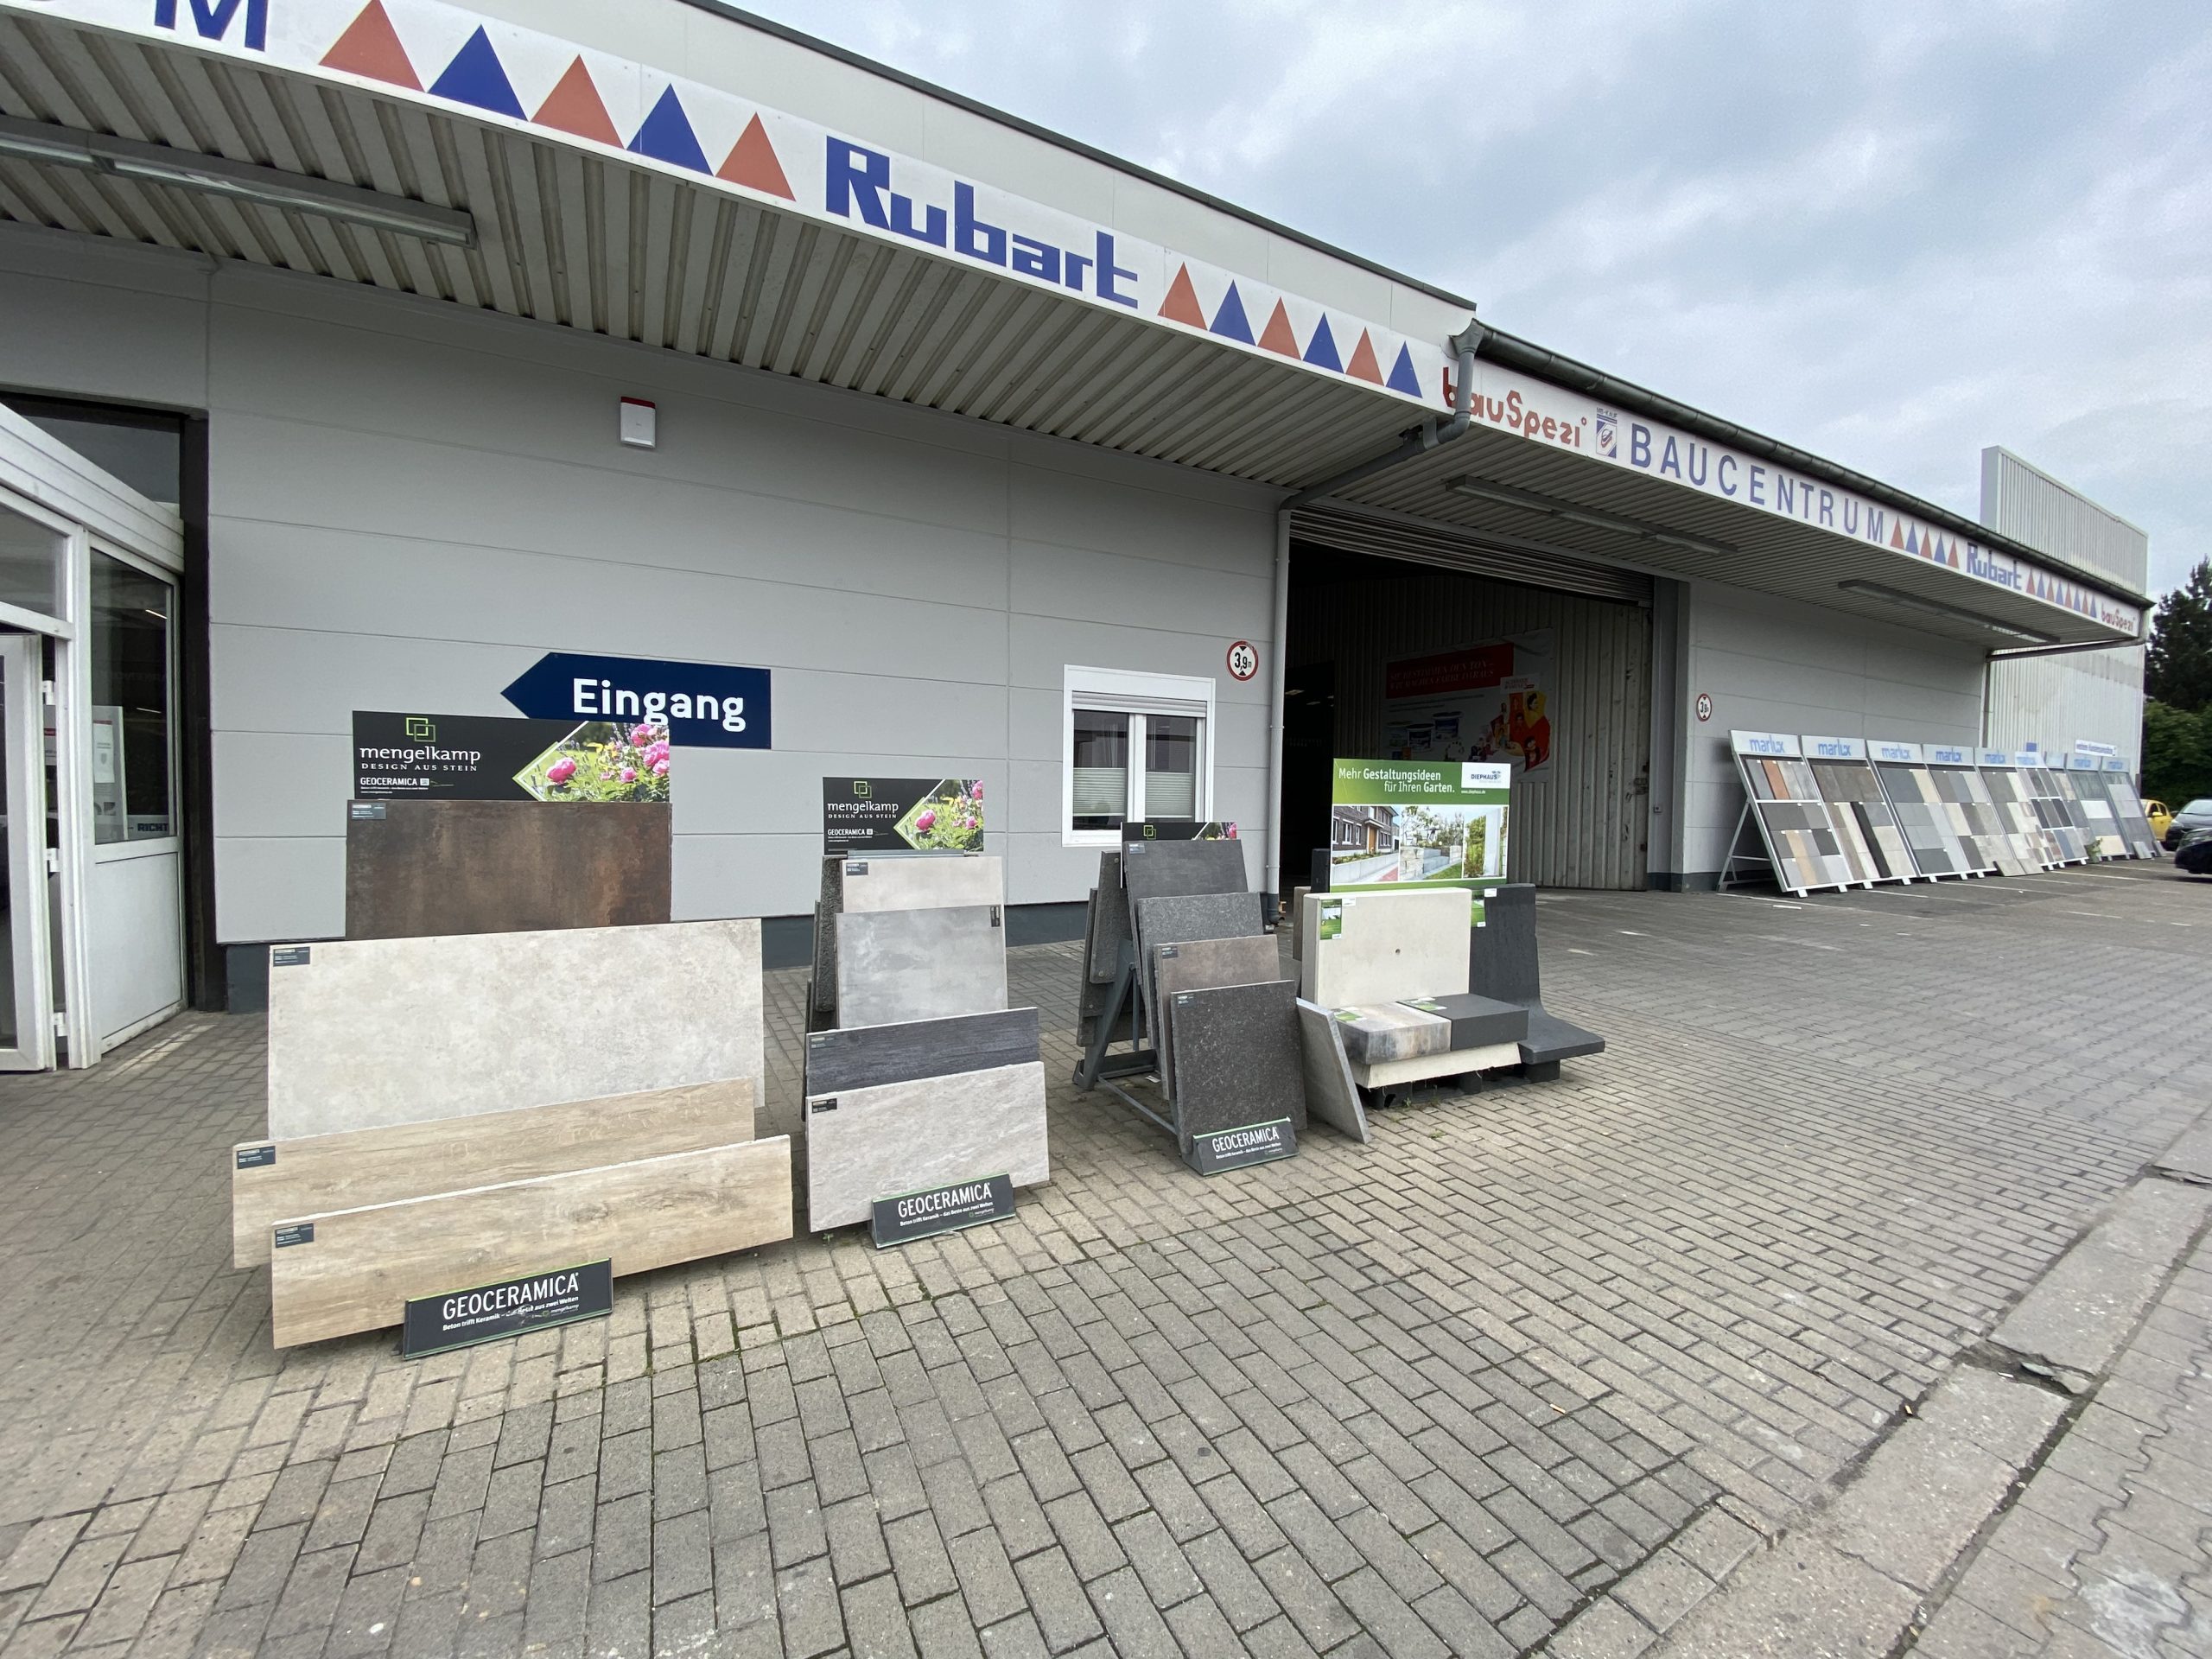 Bild 9 Baucentrum Rubart GmbH & Co. KG in Dortmund